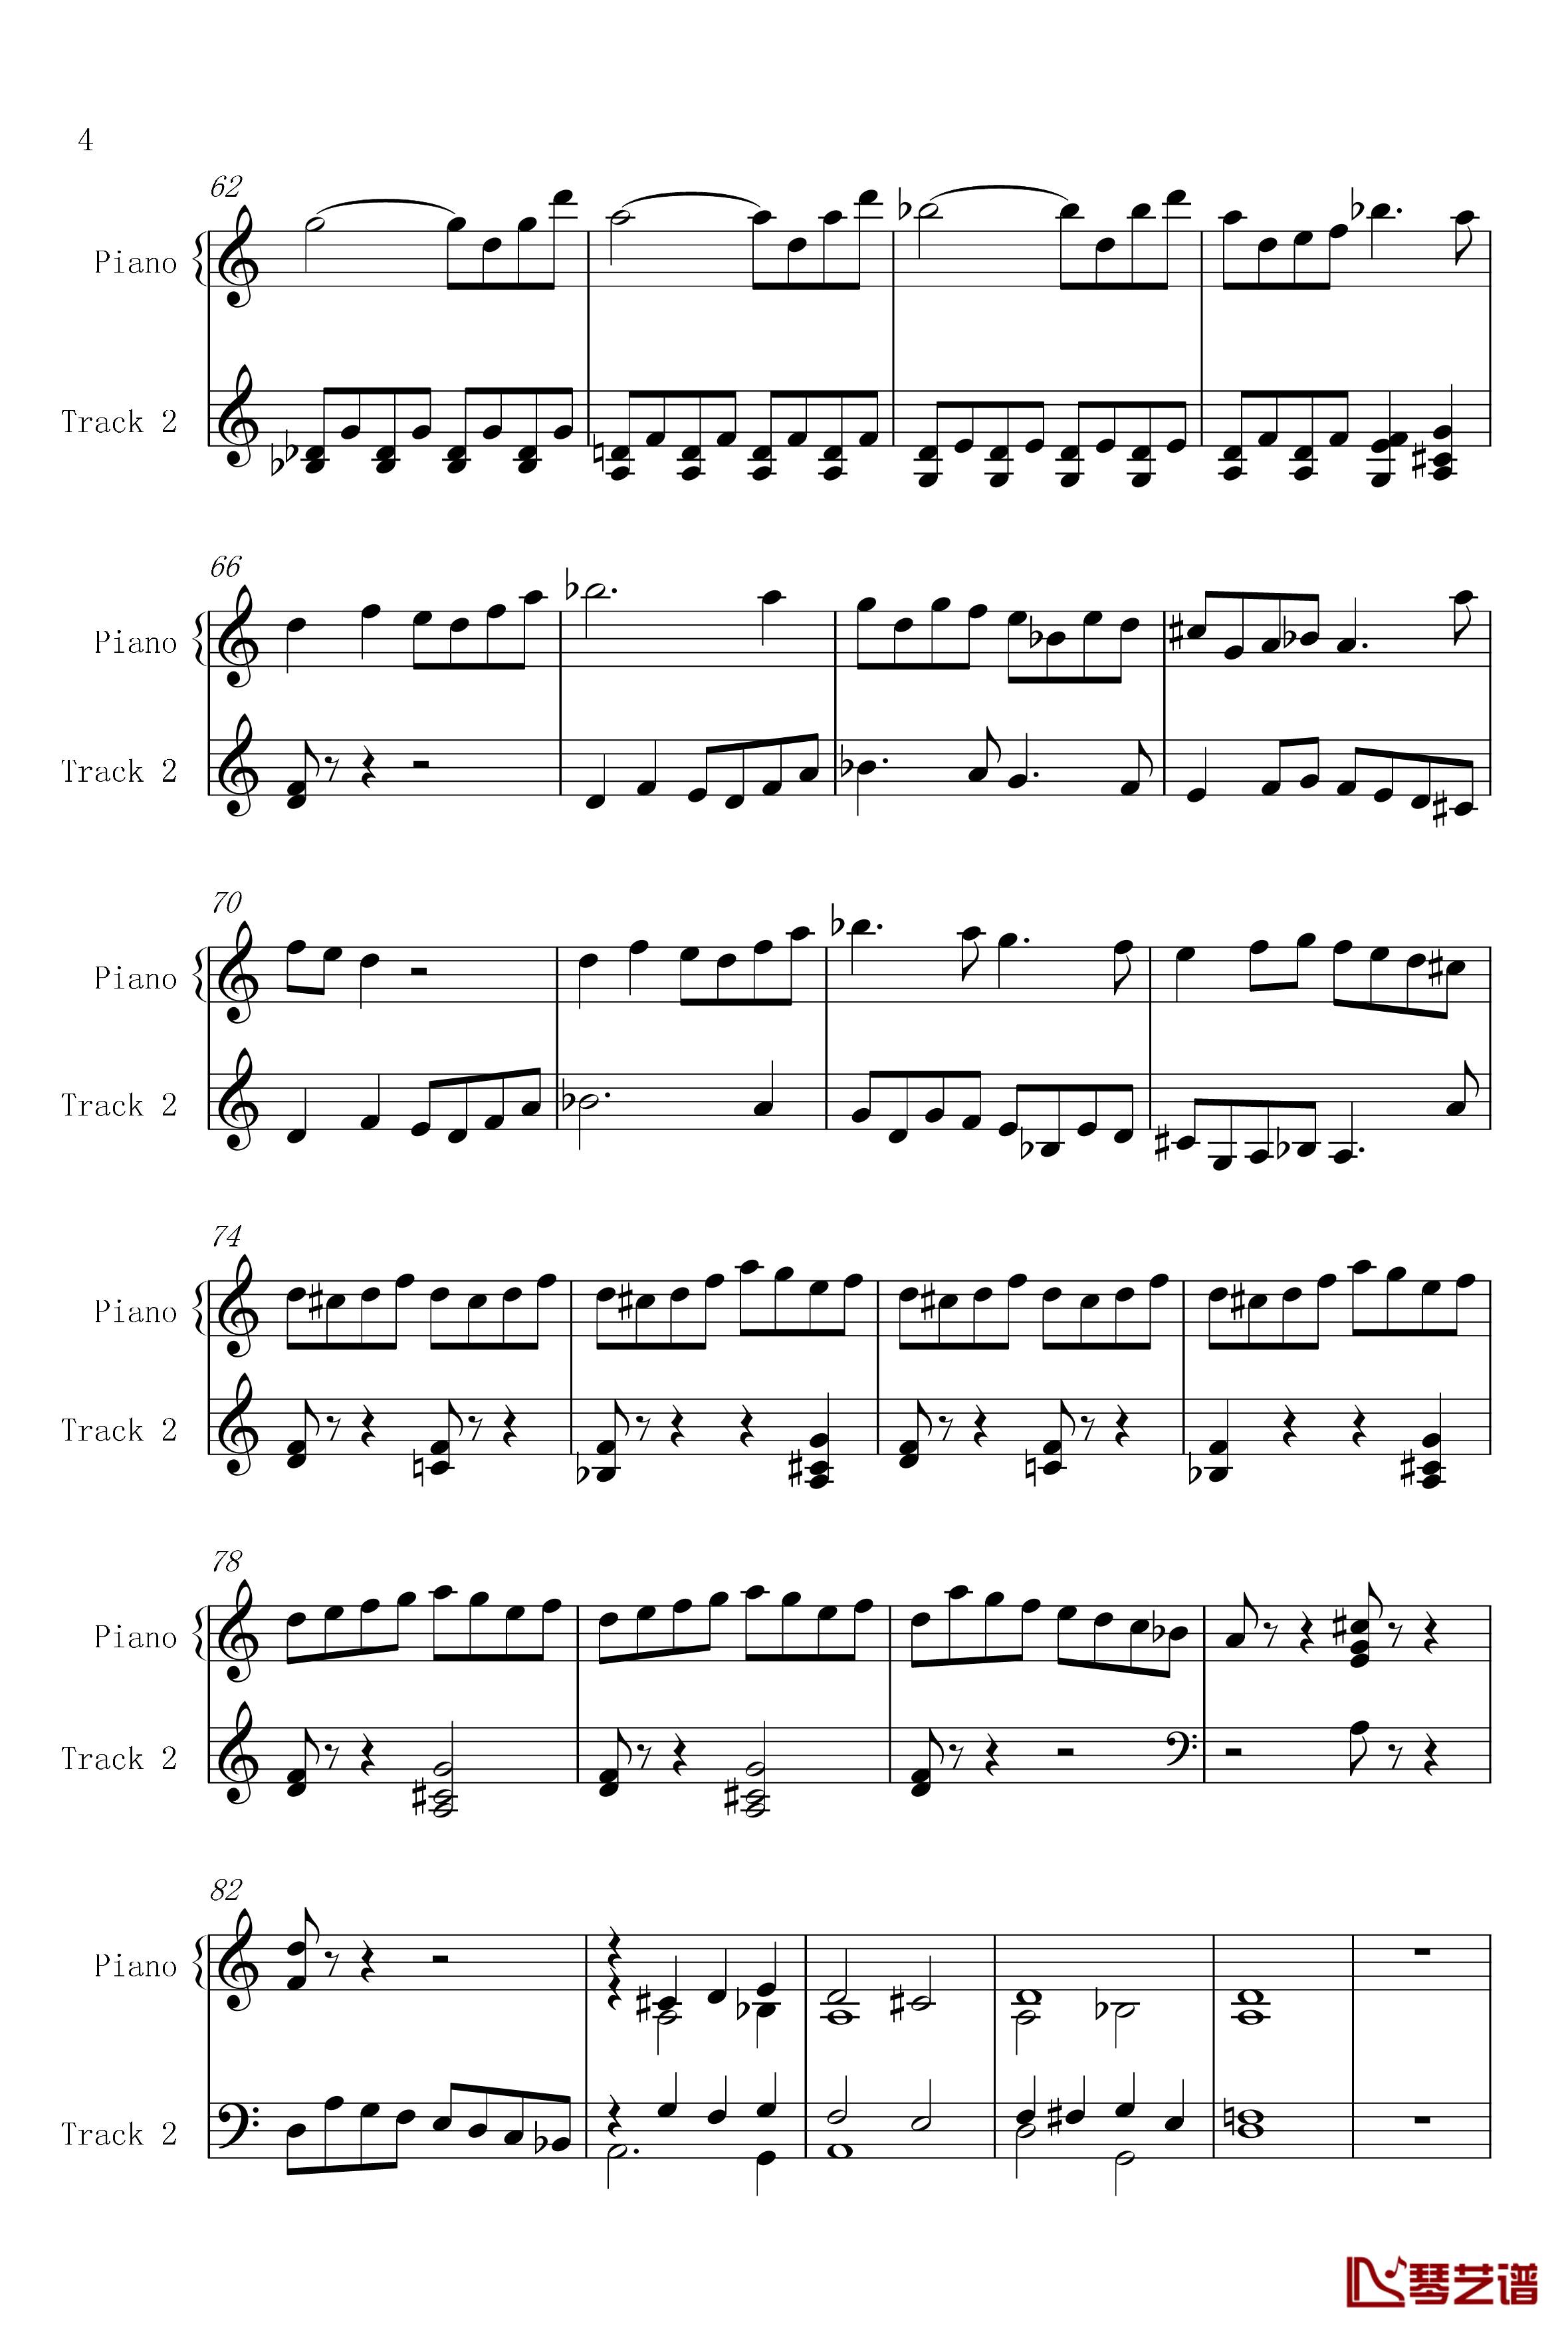 菲比赫小奏鸣曲钢琴谱-第一、二乐章-菲比赫4